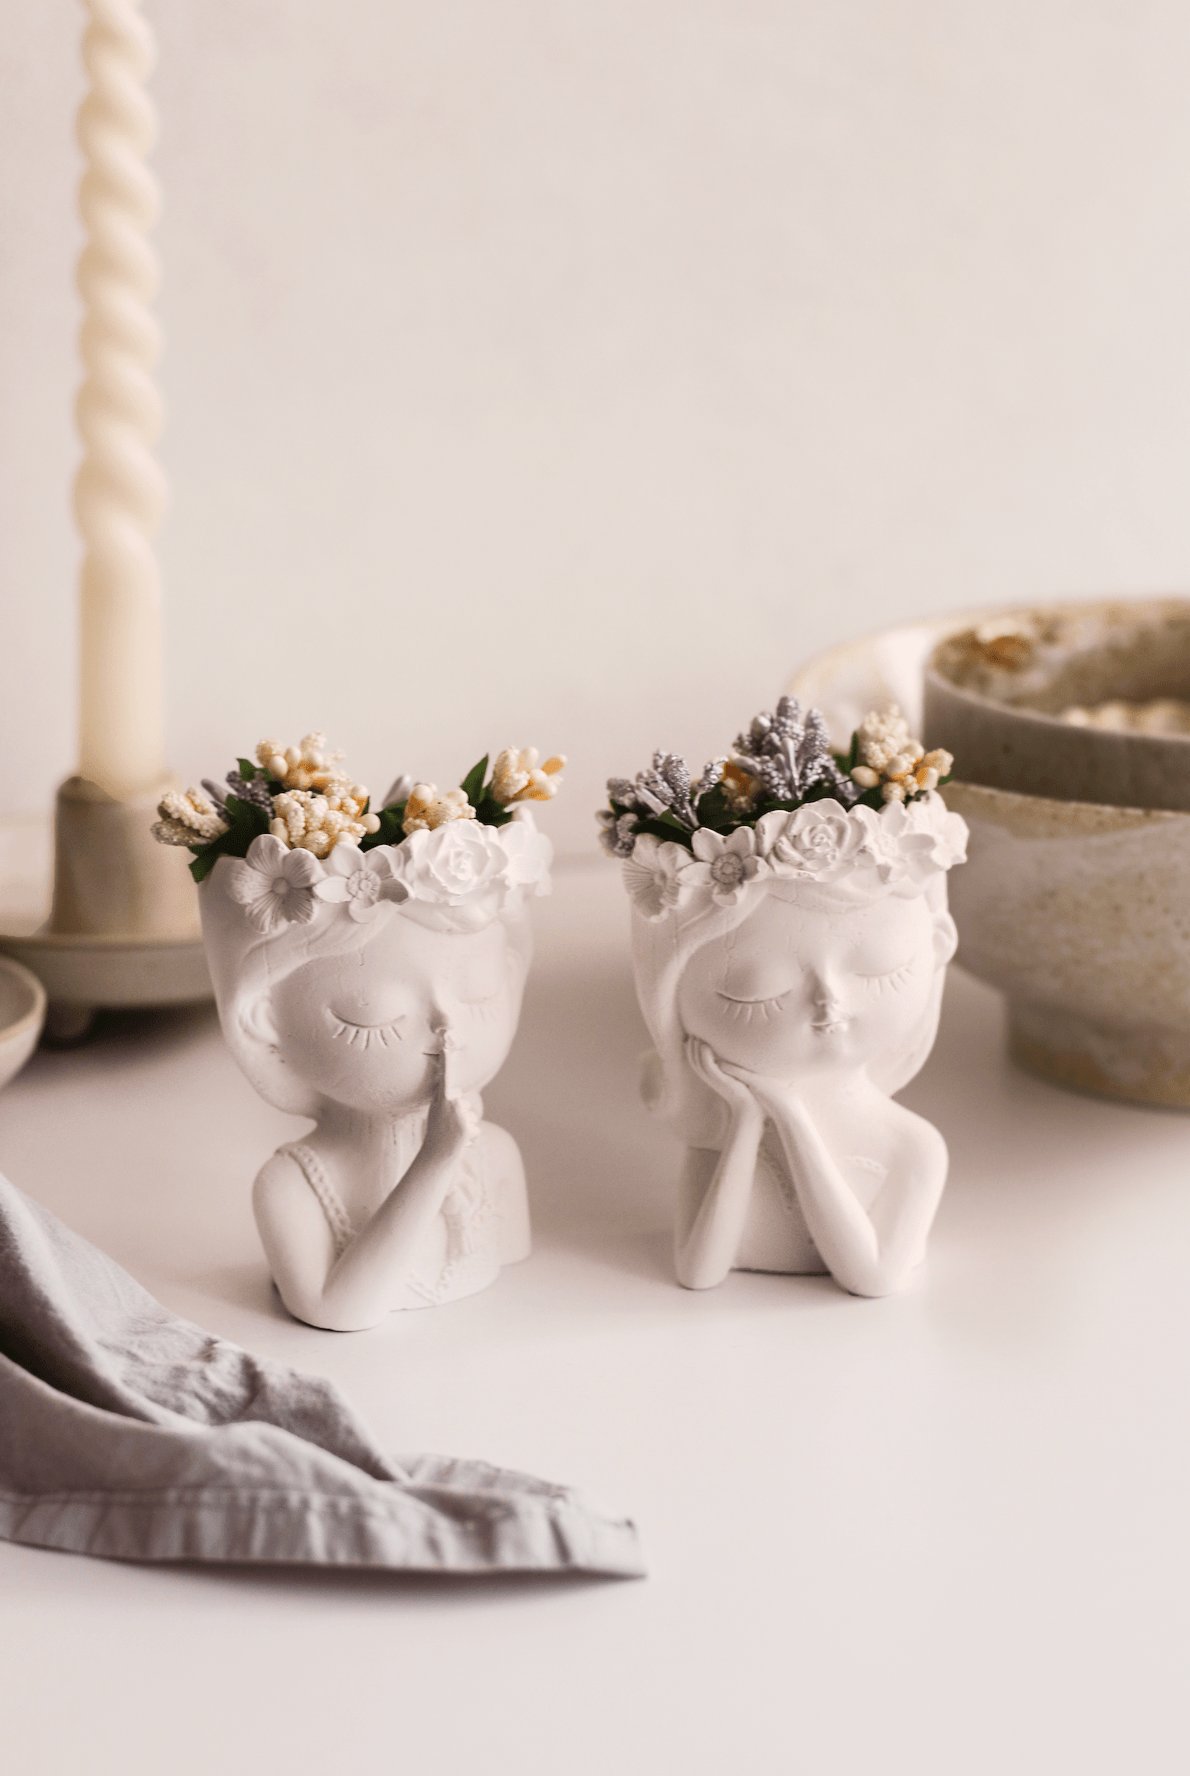 İkili Çiçekli Kız Kardeşler Dekor Vazo (Çiçekler dahildir) - beyaz